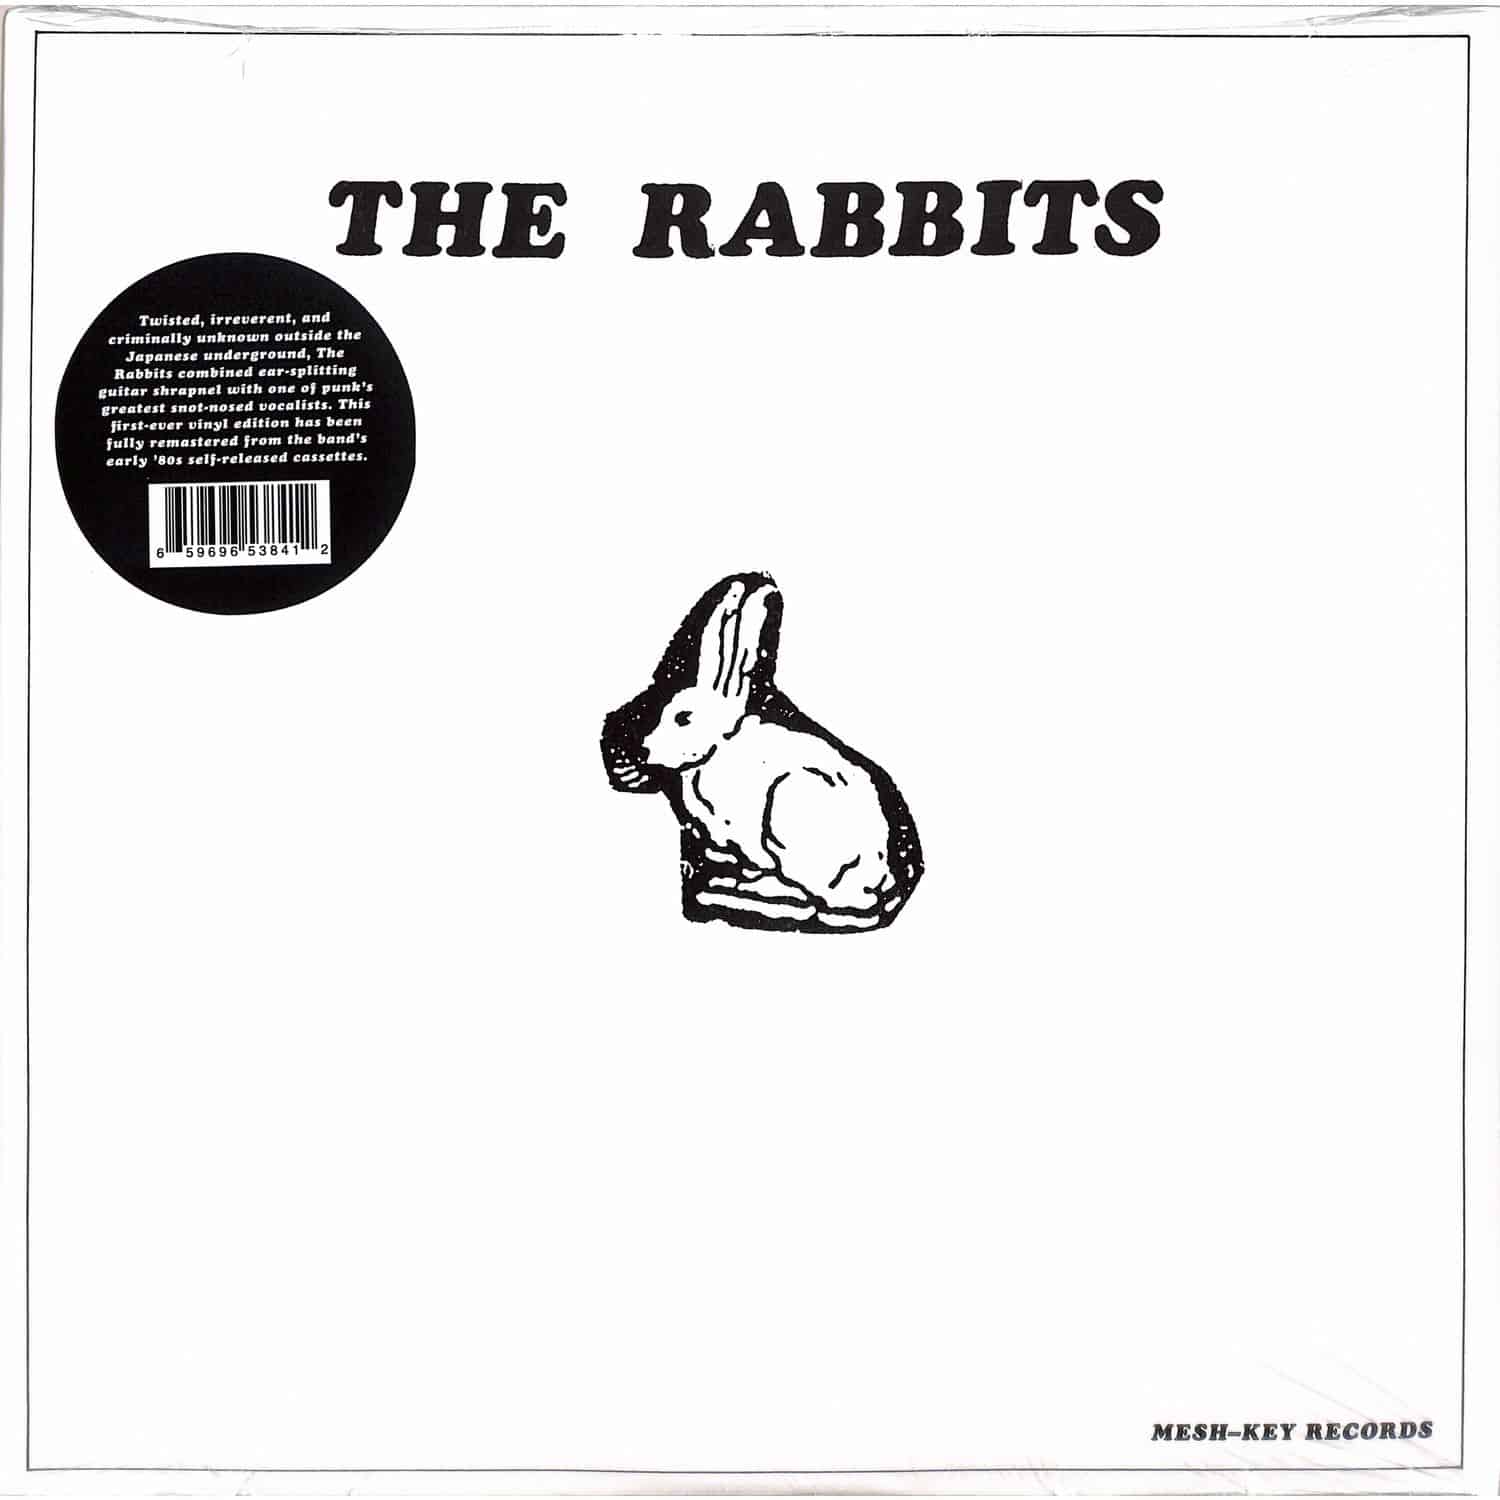 The Rabbits - THE RABBITS 